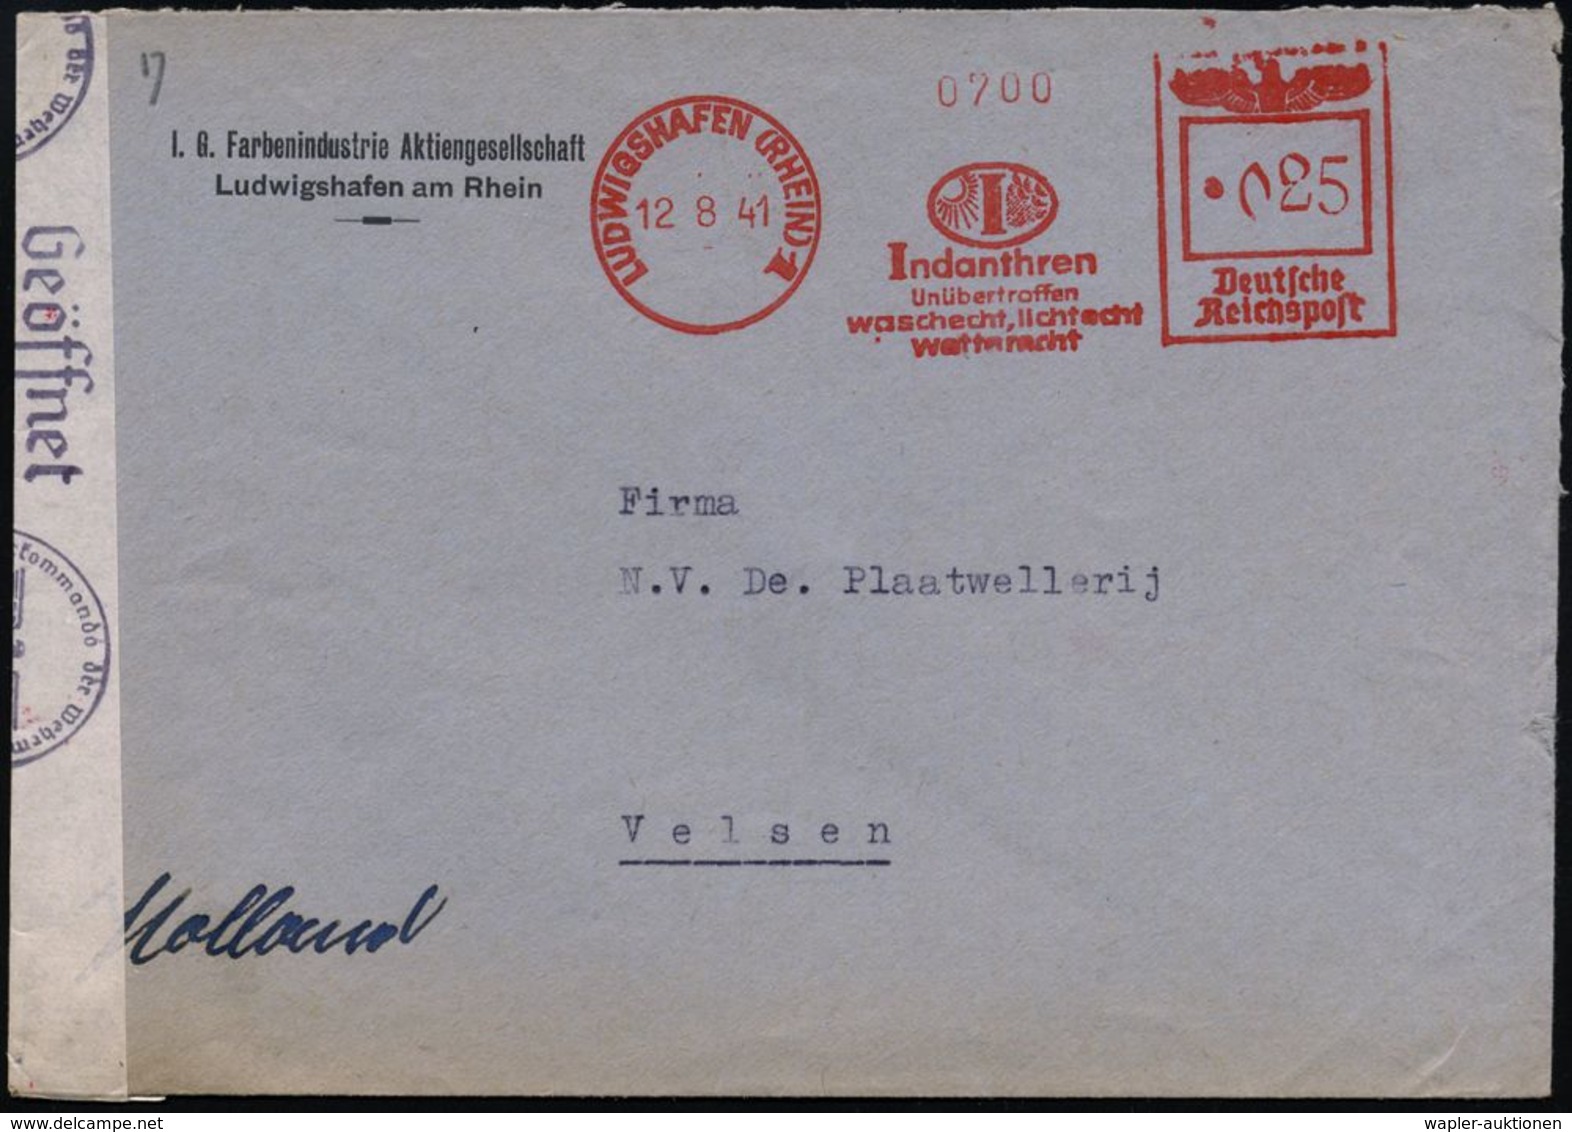 I.-G.-FARBEN INDUSTRIE, TOCHTERFIRMEN & NACHFOLGER : LUDWIGSHAFEN (RHEIN)1/ Indanthren/ ..lichtecht/ Wetterfest 1941 (12 - Chemistry